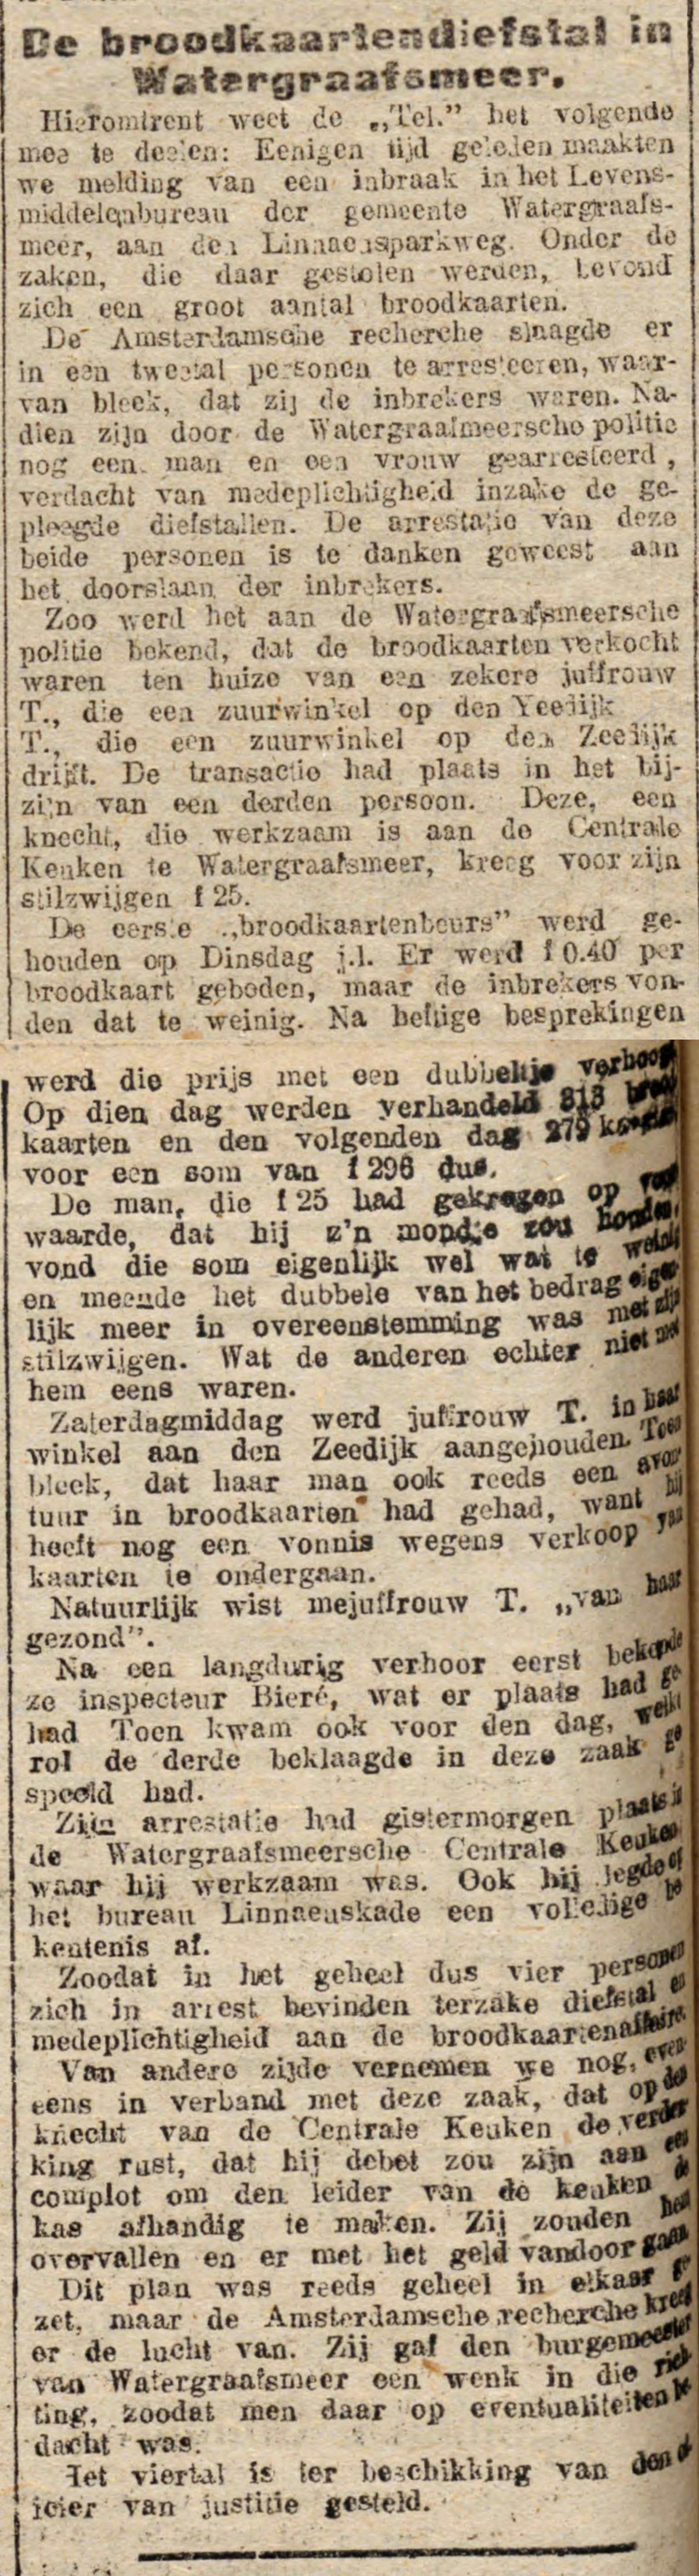 17 juli 1918 - De broodkaartendiefstal in de Watergraafsmeer.  